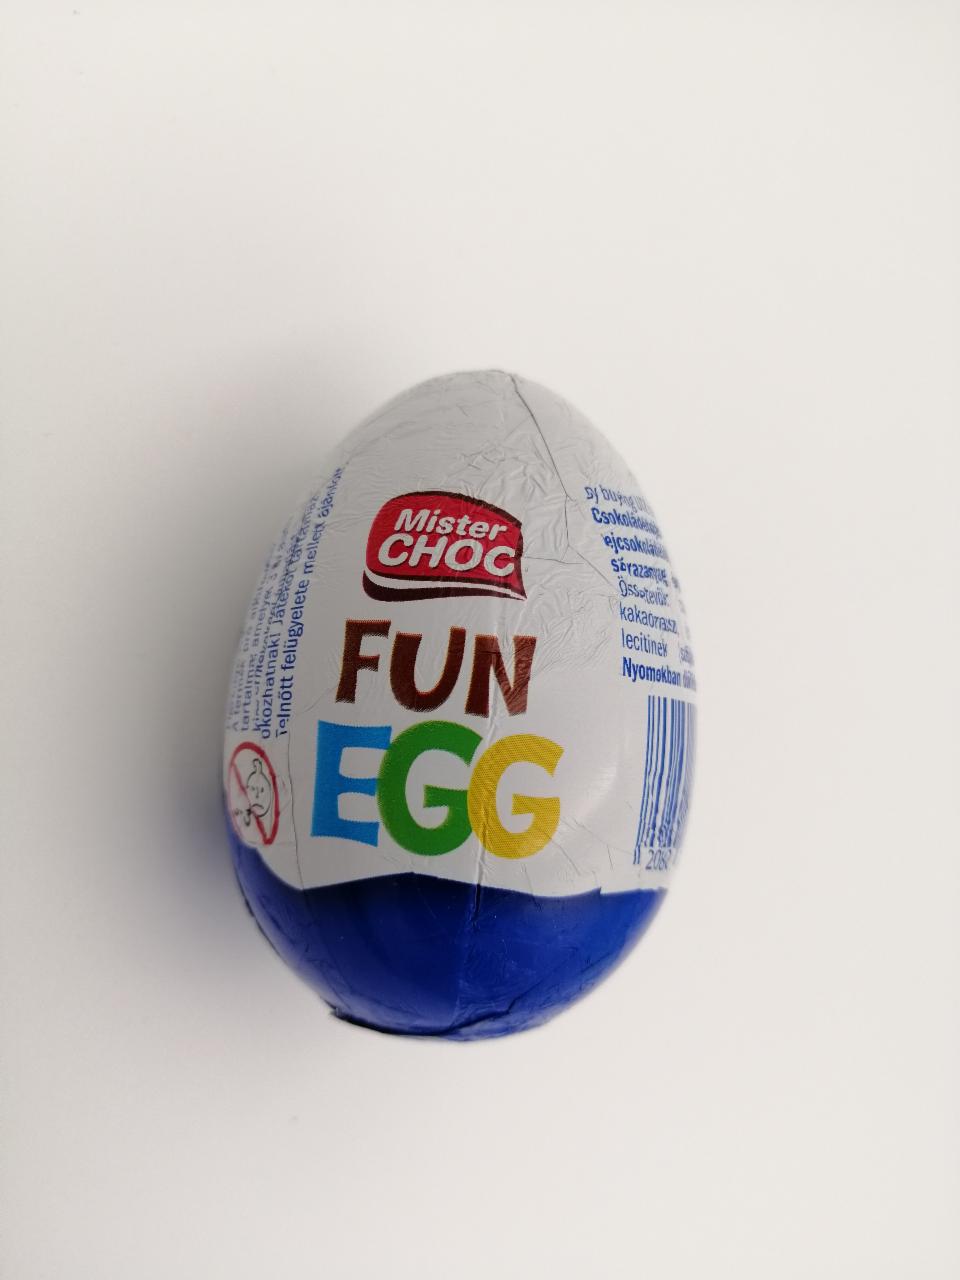 Képek - Mister choc fun egg 